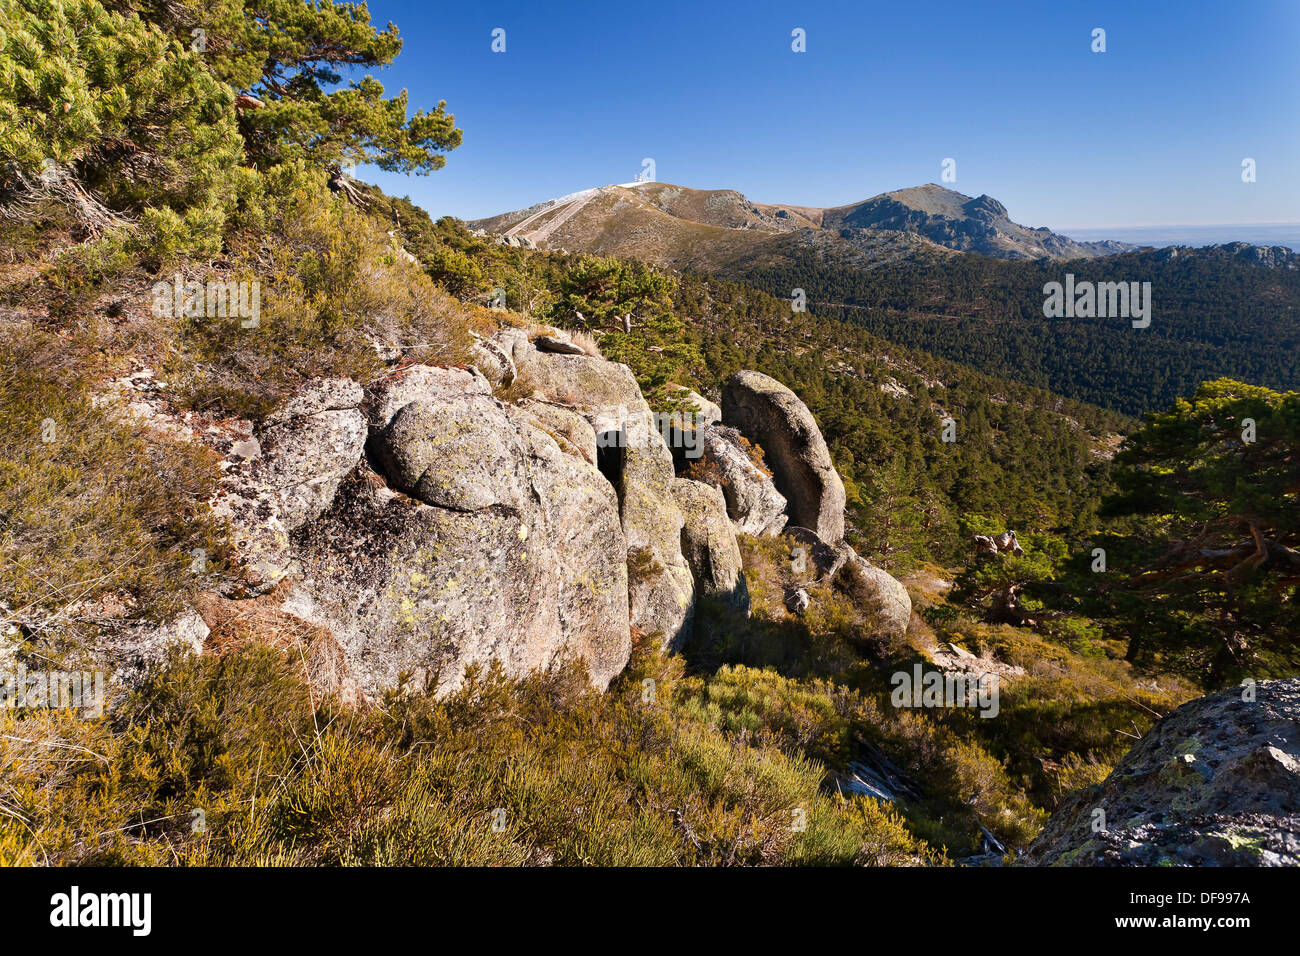 The Bola del Mundo and the Maliciosa peaks from Siete Picos Sierra de  Guadarrama Madrid Spain Stock Photo - Alamy